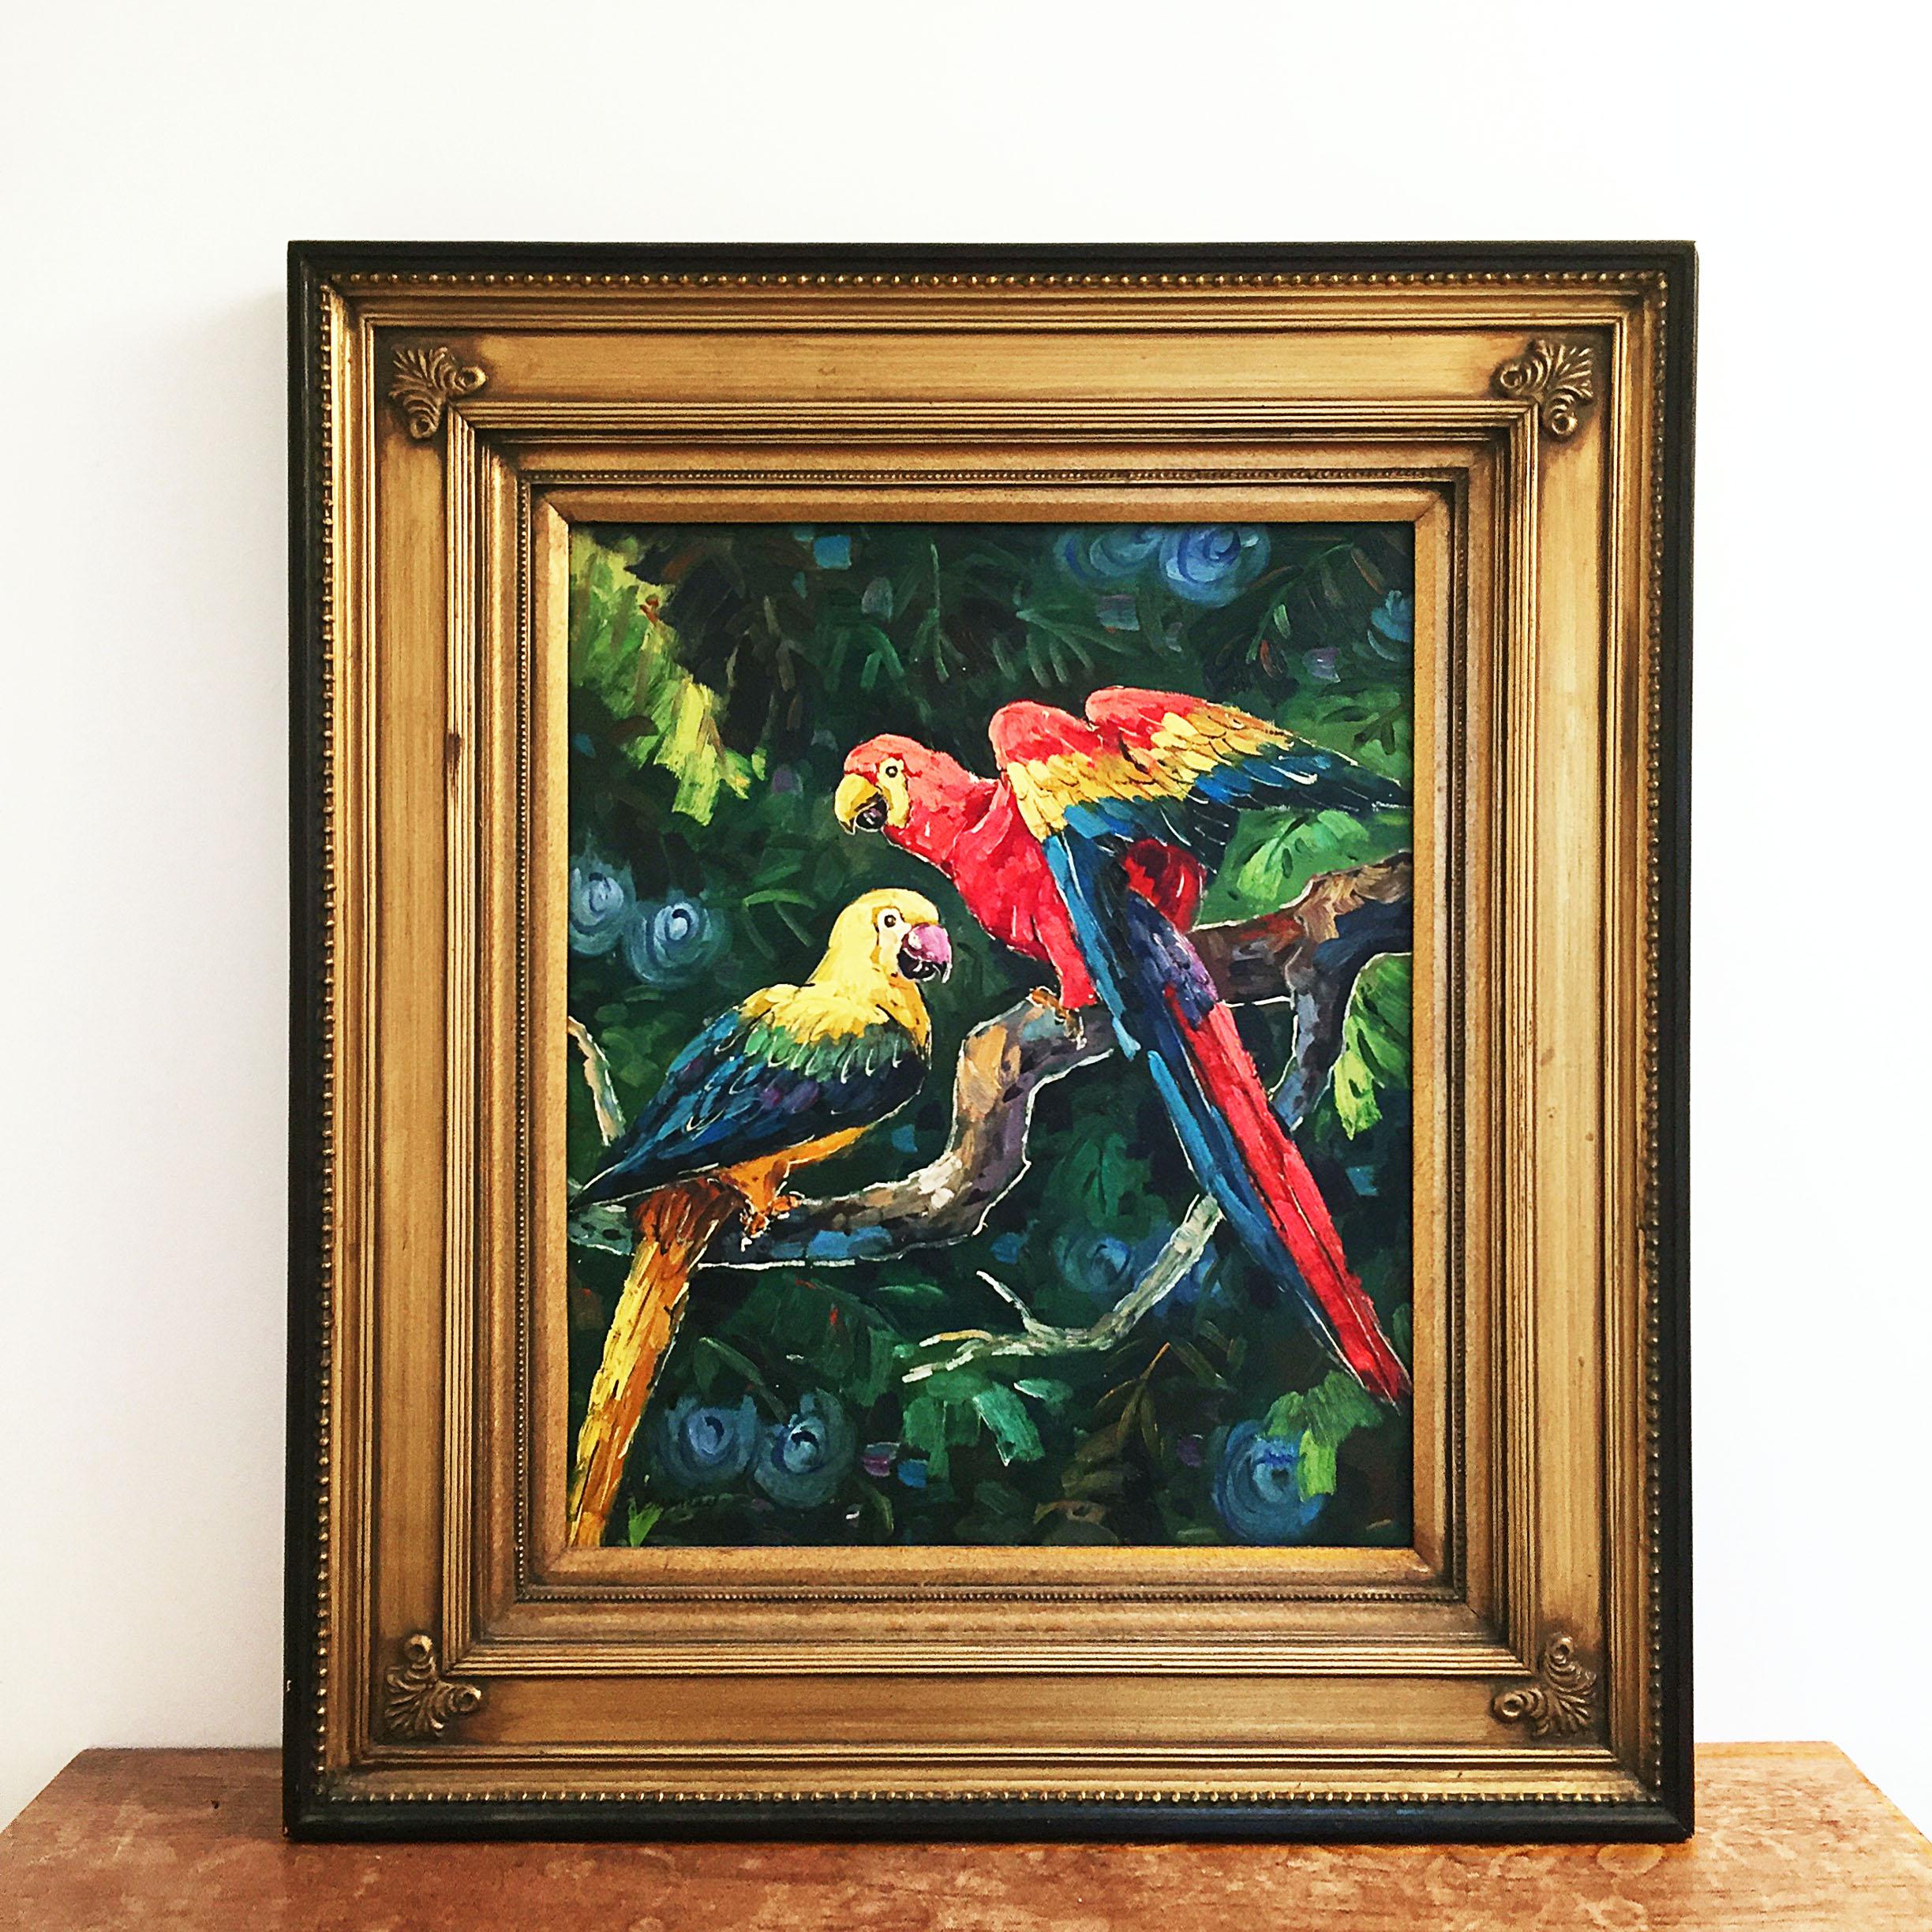 Ein schönes exotisches Gemälde in Öl auf Leinwand, das zwei Papageien in einem Dschungel darstellt. Kräftige Farben, kahl gebürstet und gerahmt in einem schweren vergoldeten Holz- und Gipsrahmen. Irgendwann in den 1990er Jahren hergestellt und